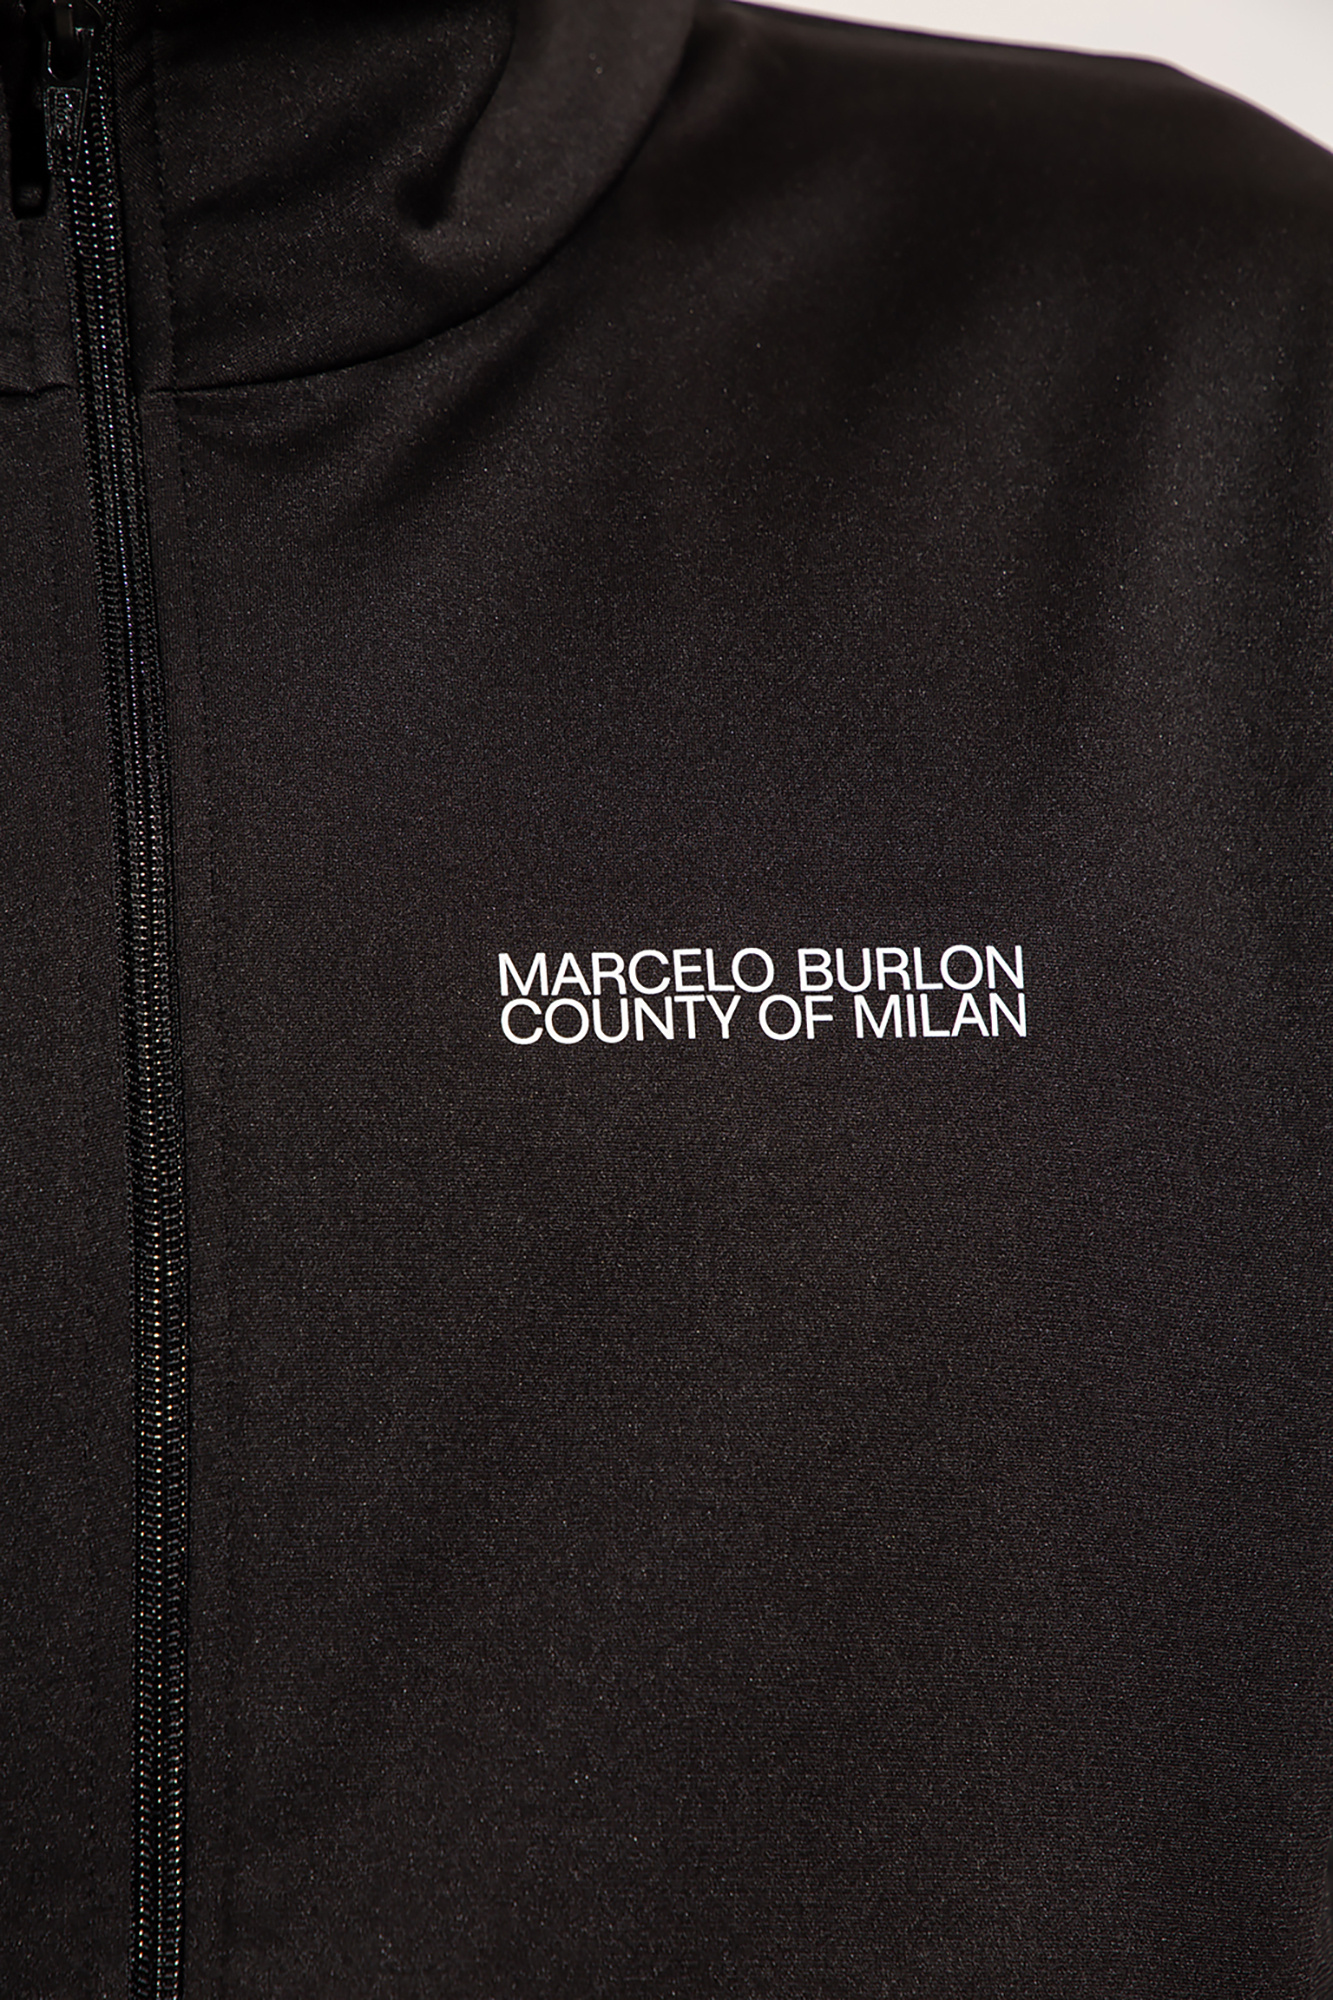 Marcelo Burlon T-shirt Cest La Vie